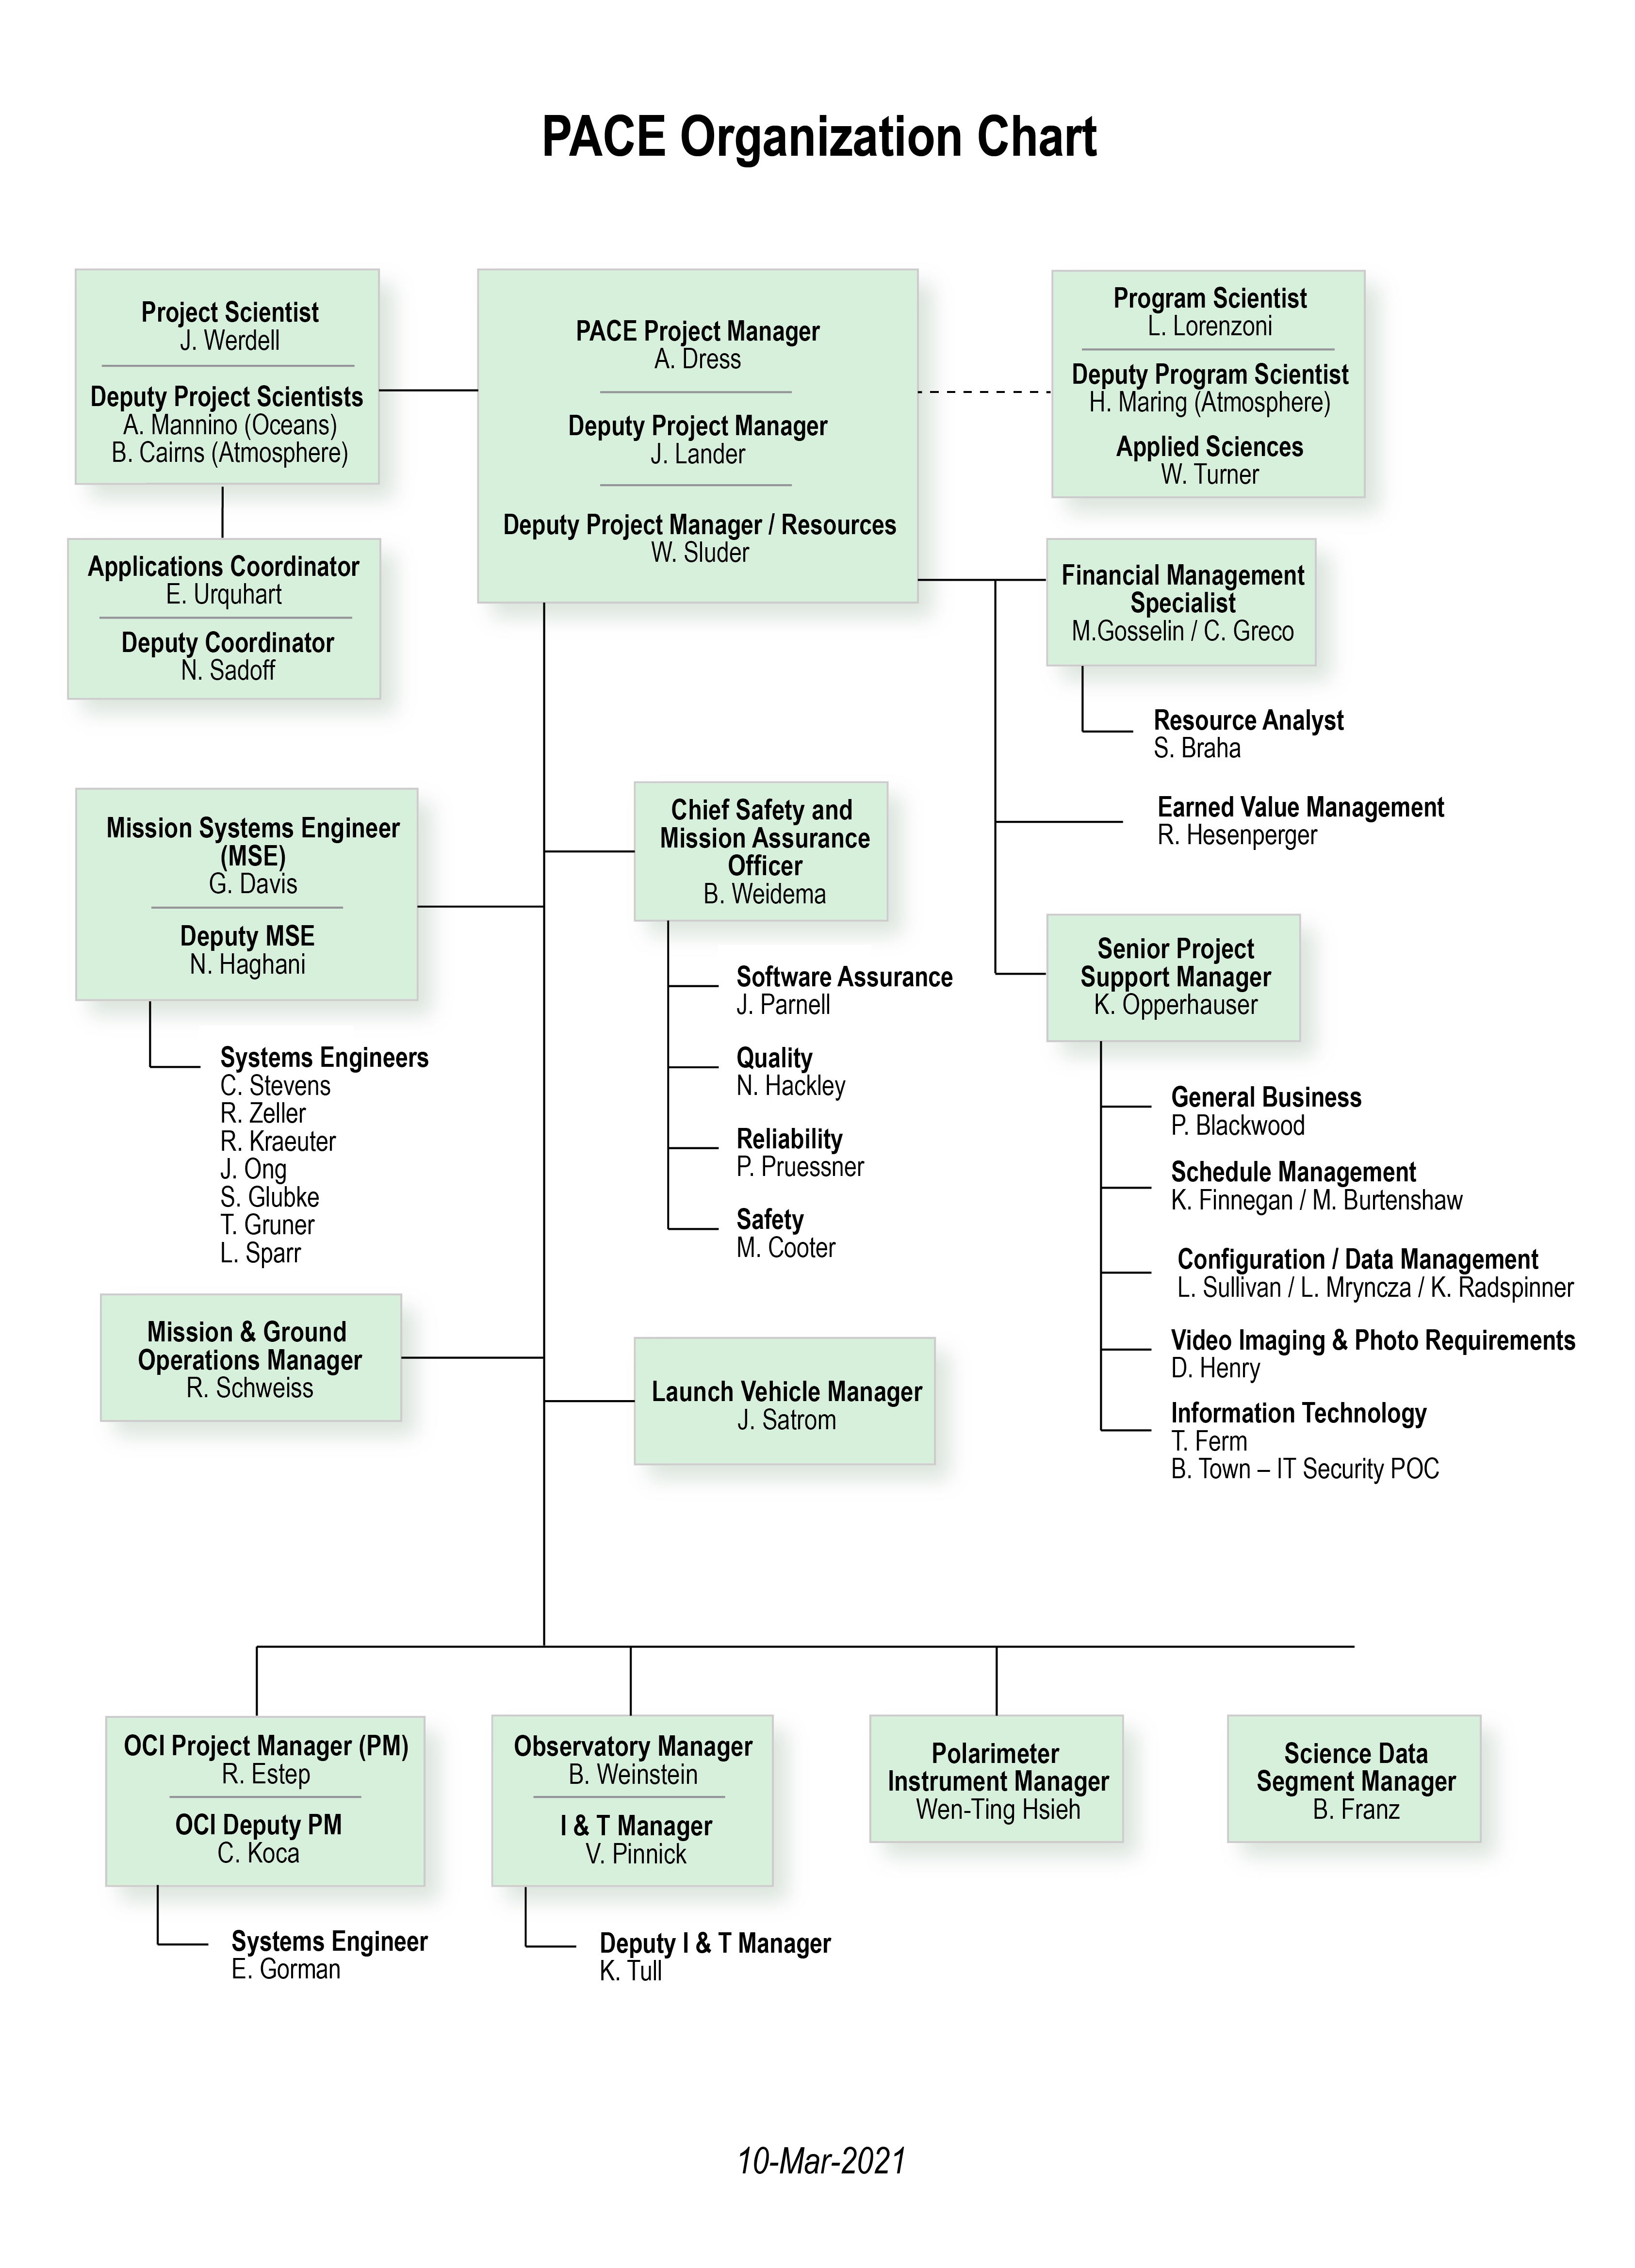 PACE organizational chart